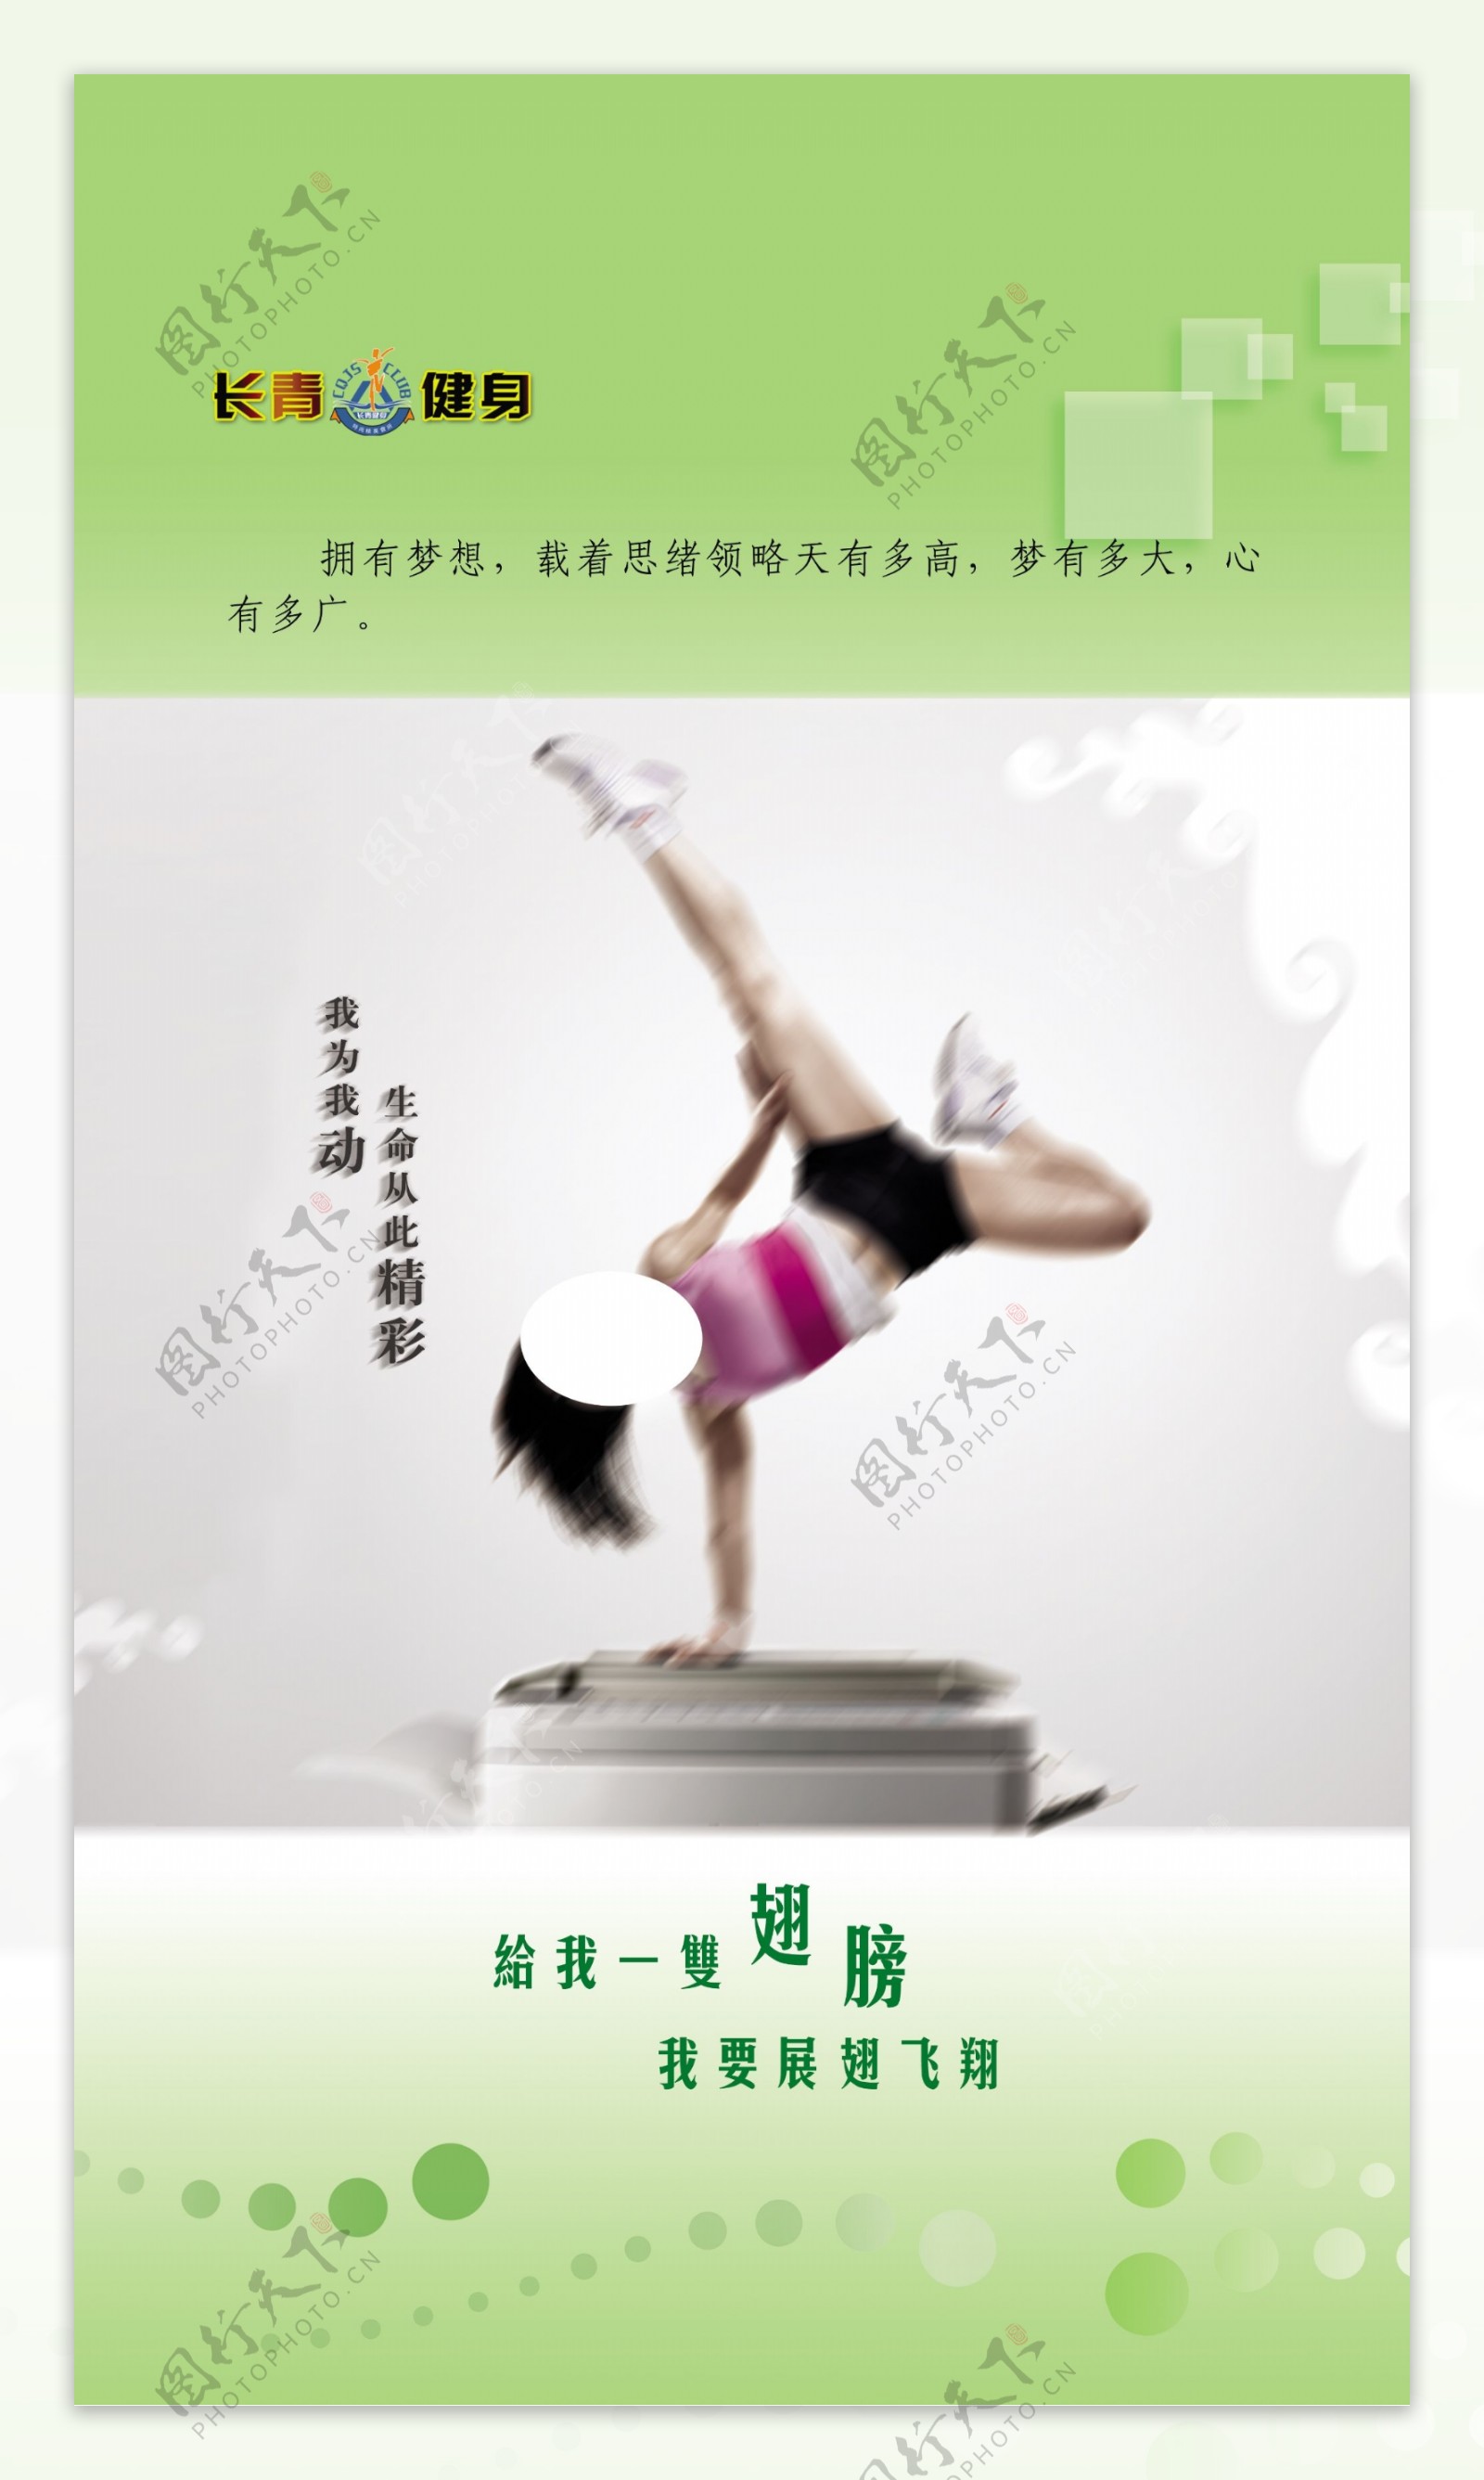 瑜伽培训广告图片